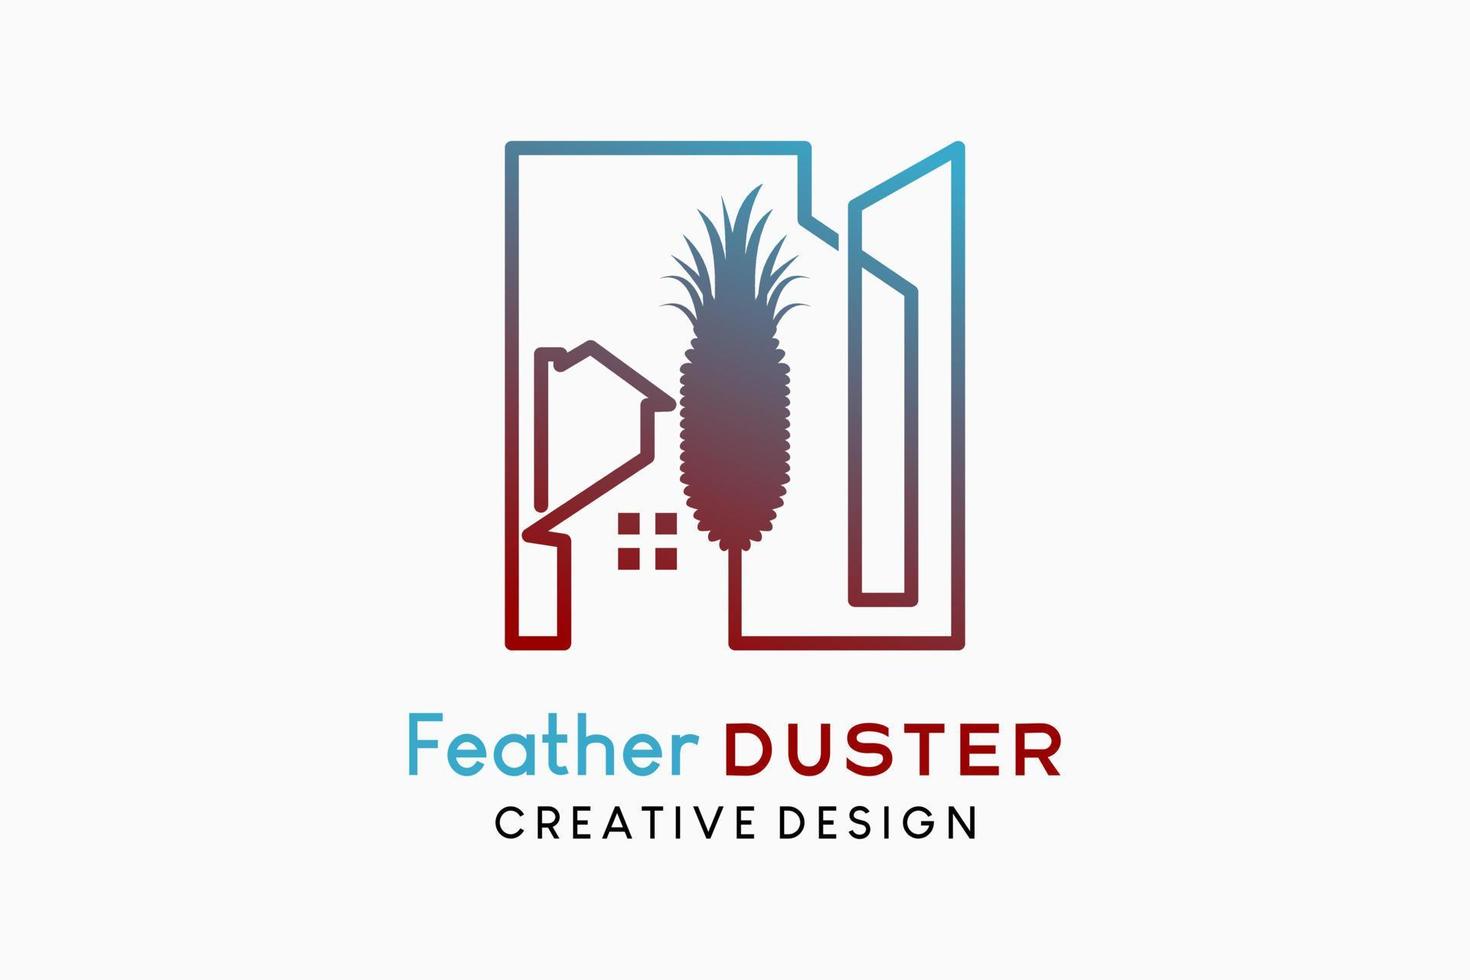 Quill Feather Duster Logo Design traditionelle Staubreiniger Illustration, Silhouette eines Federstaubwedels kombiniert mit Haus- und Gebäudesymbolen in Strichzeichnungen vektor